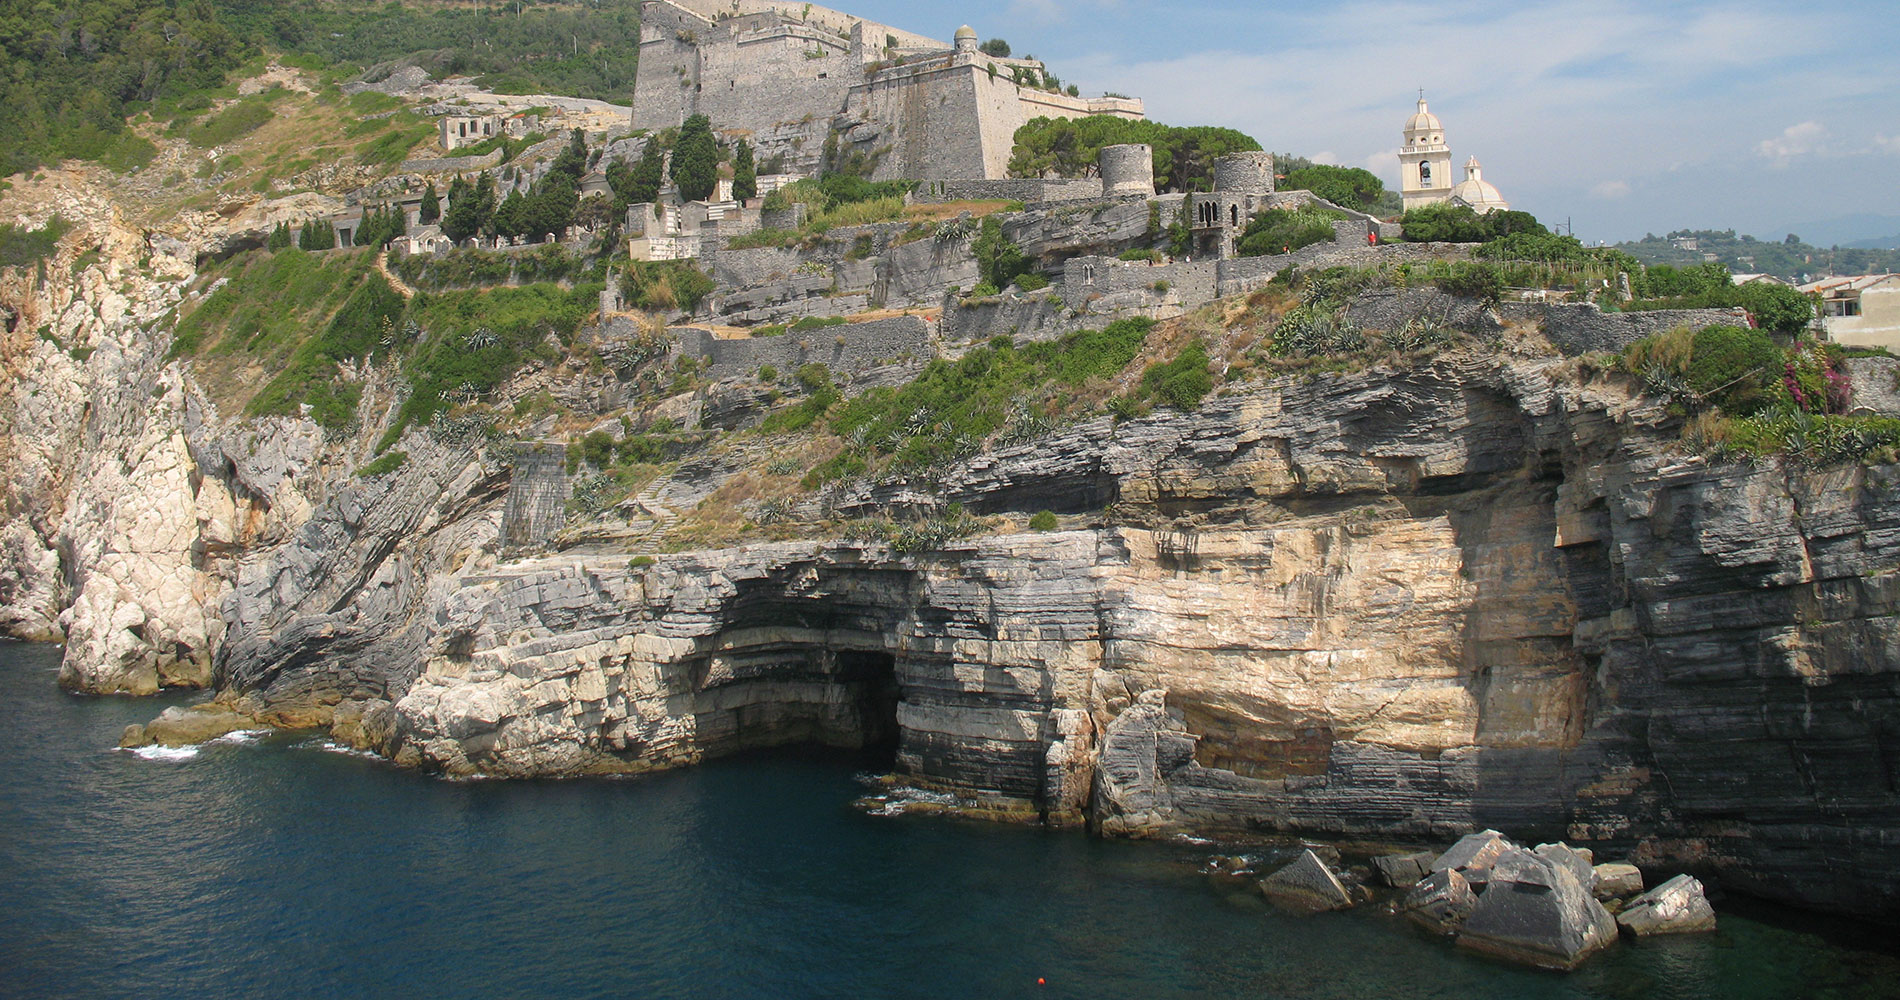 Grotta Byron, la grotte marine située entre Punta San Pietro et le château Doria